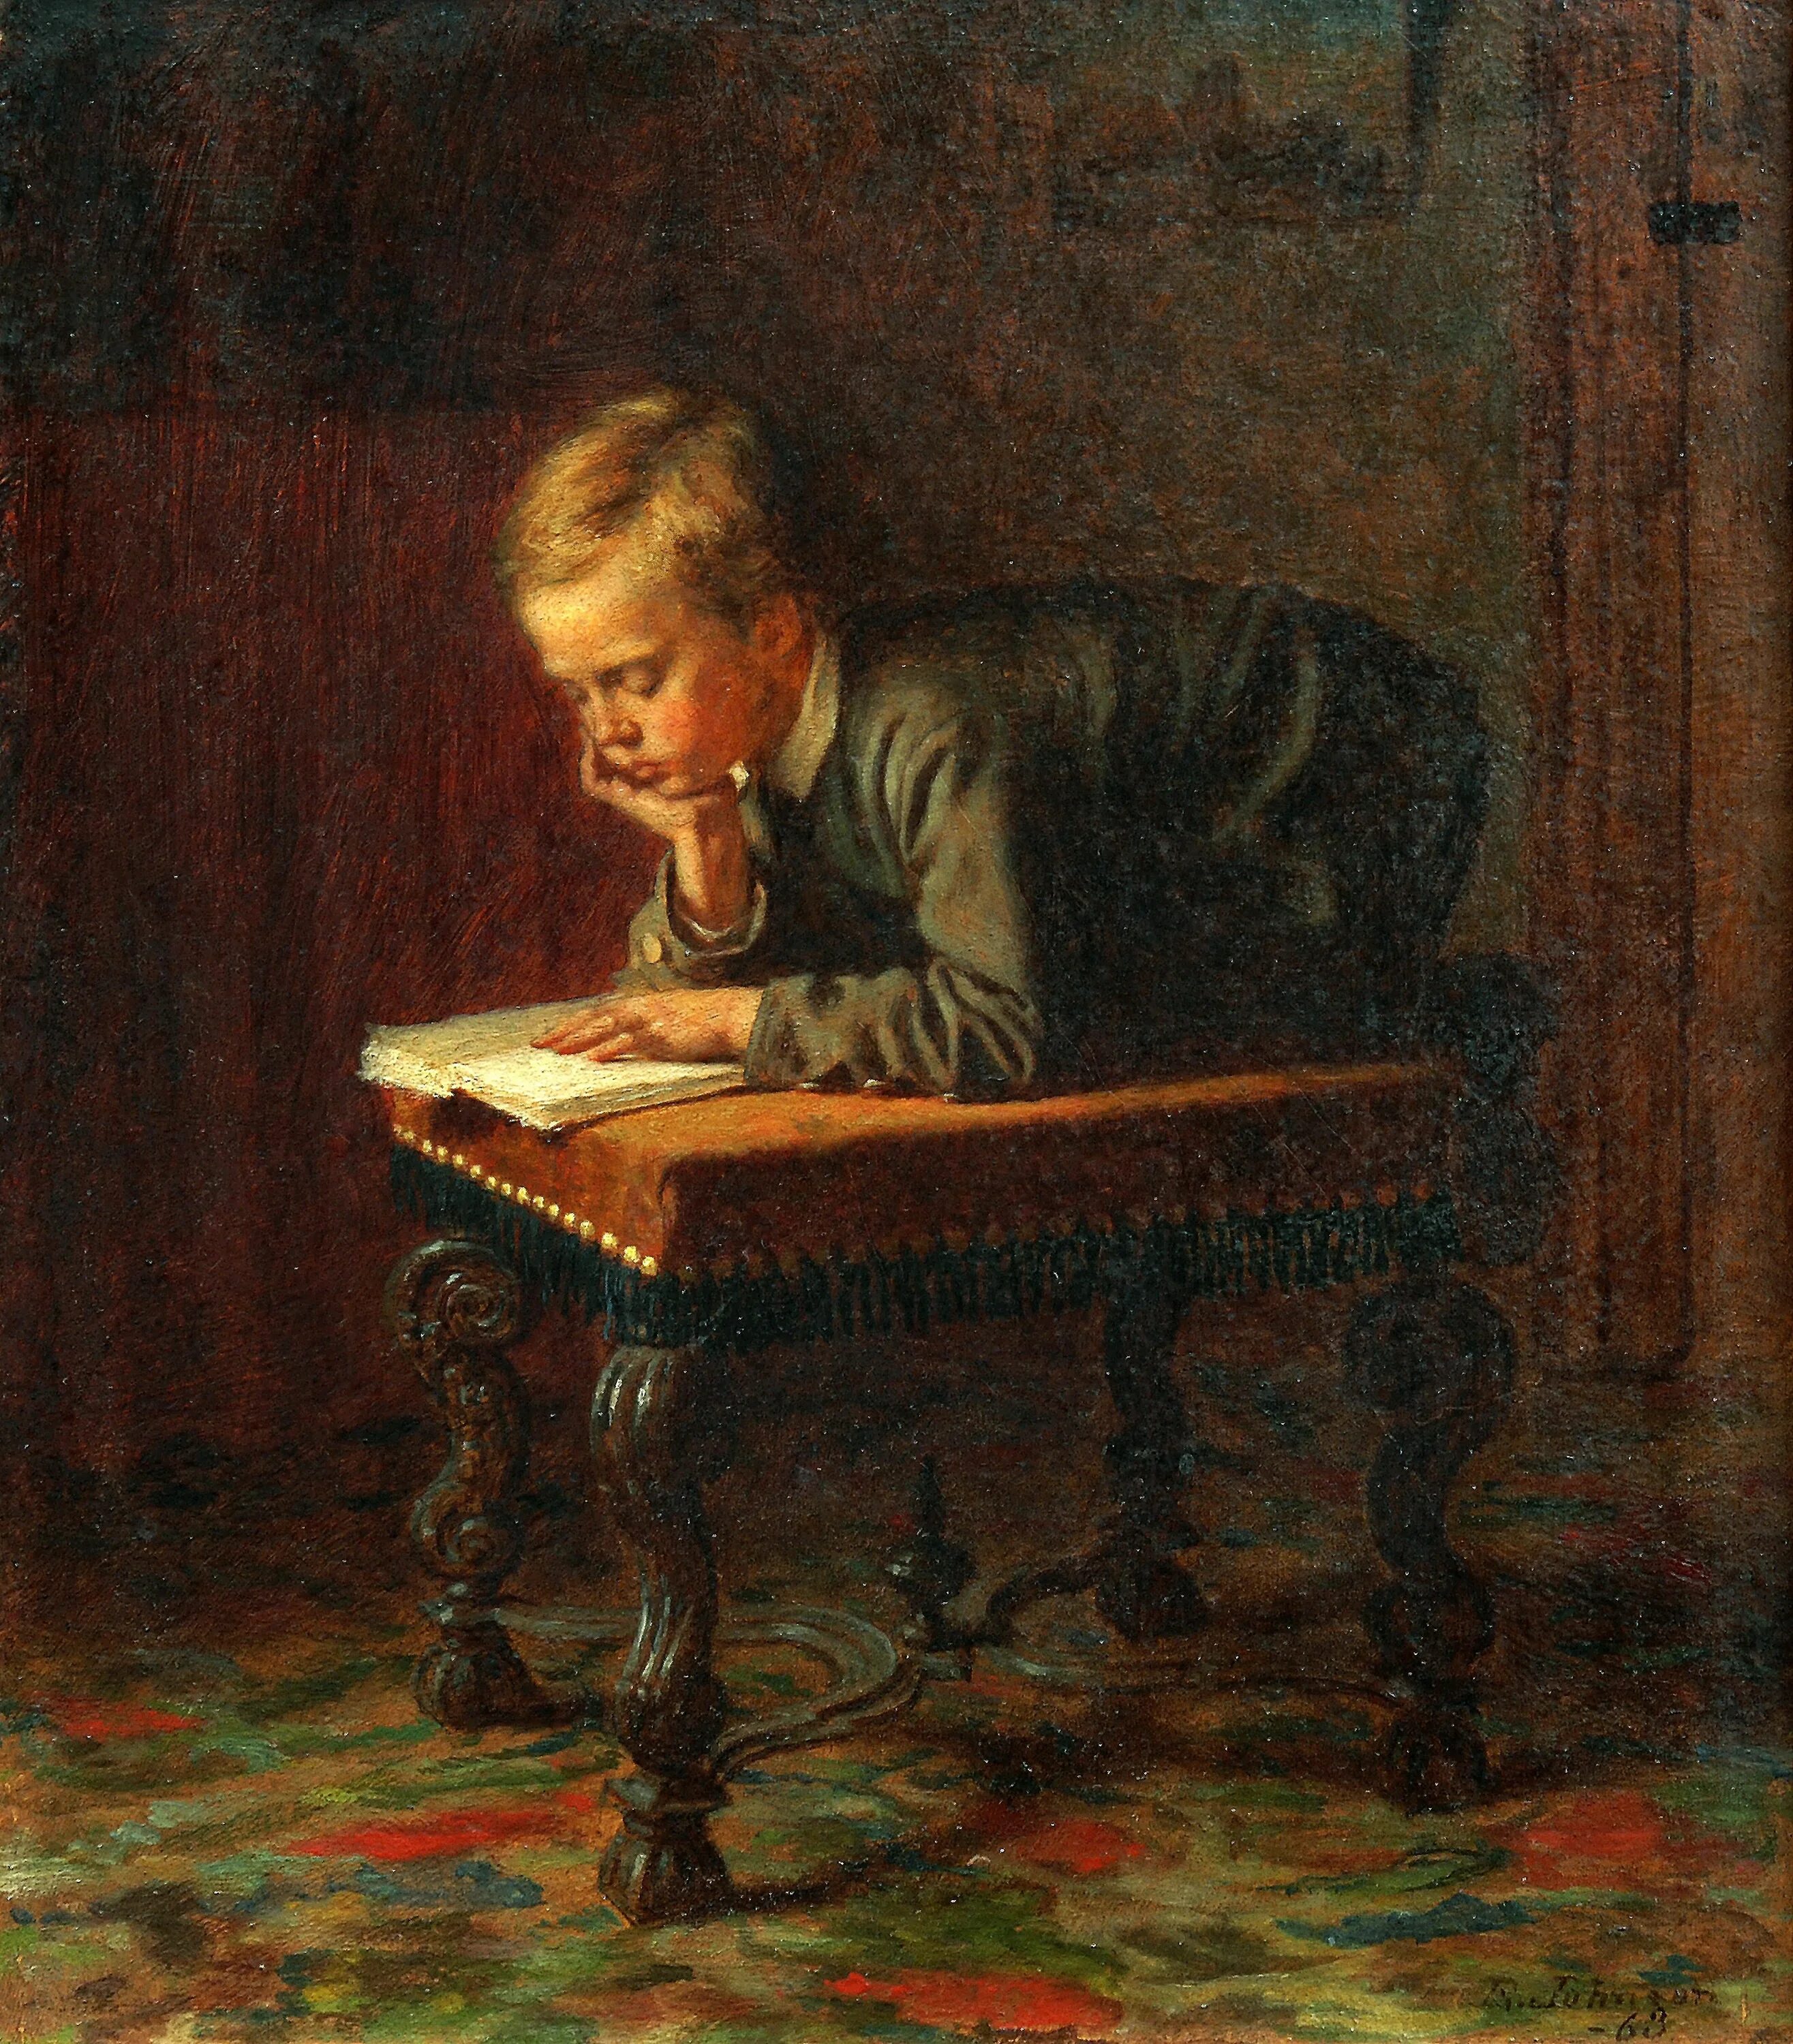 Eastman Johnson (American Painter) 1824 - 1906. Мальчики в картинах художников. Чтение картины художников. Картина мальчик с книгой.